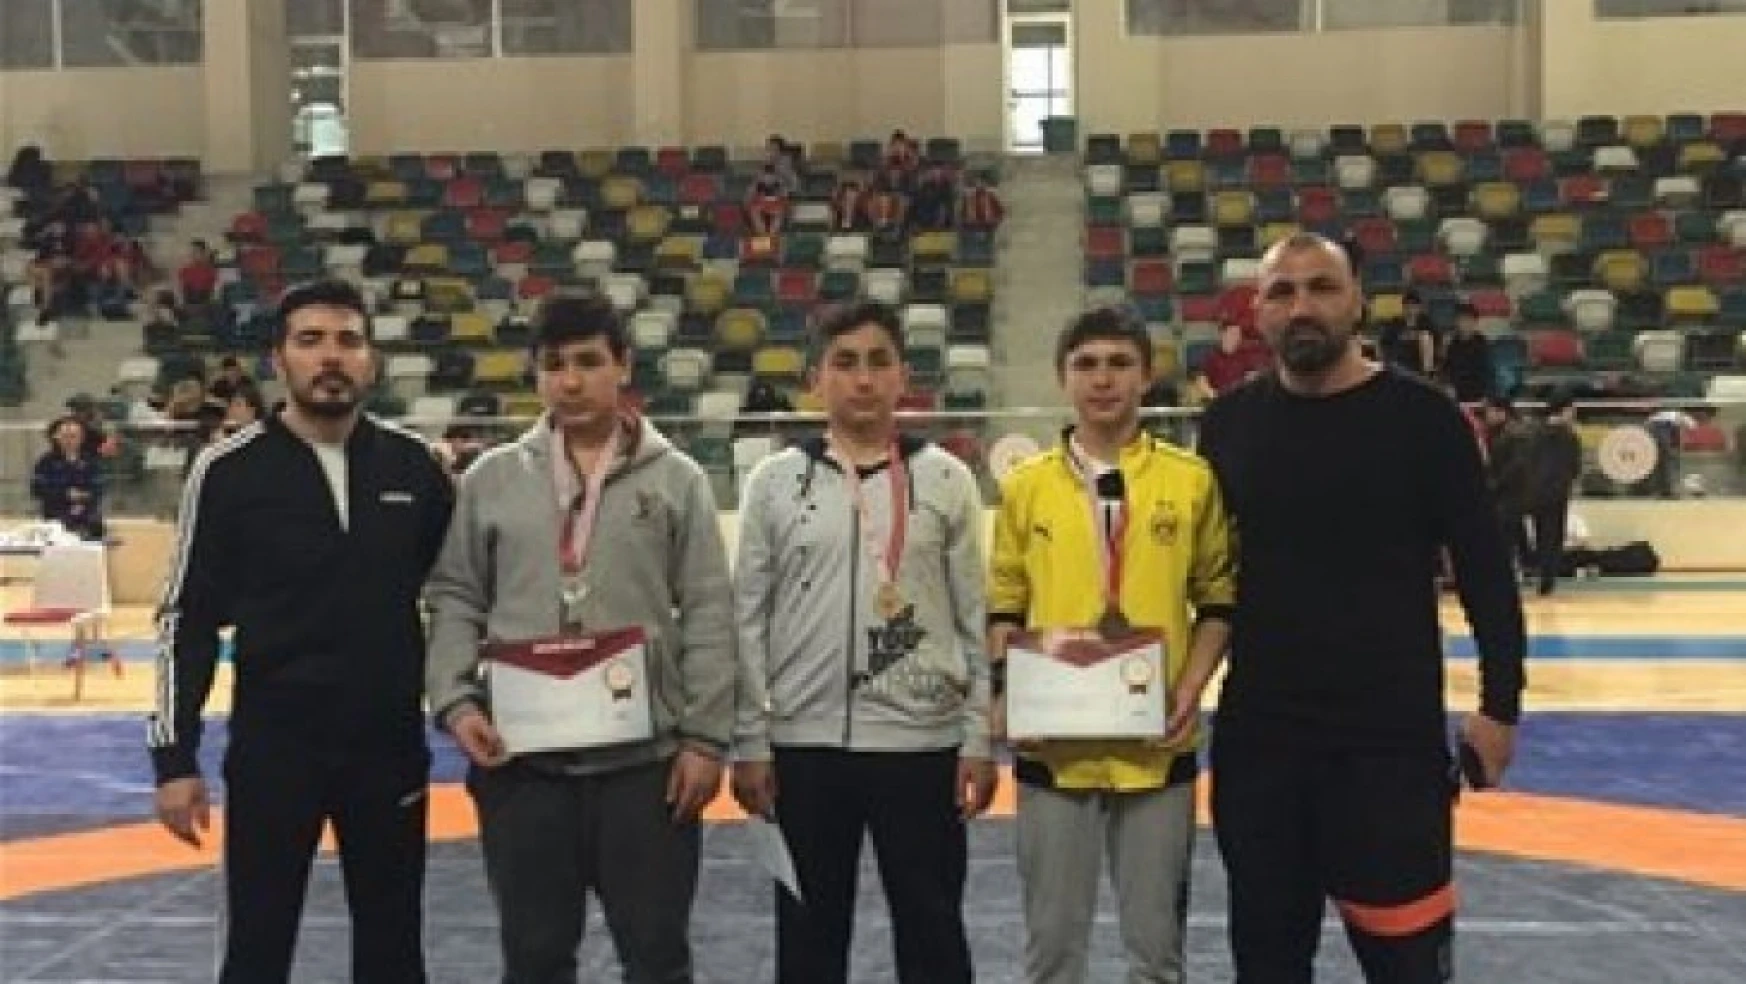 Malatyalı güreşçilerin Türkiye Şampiyonası sevinci